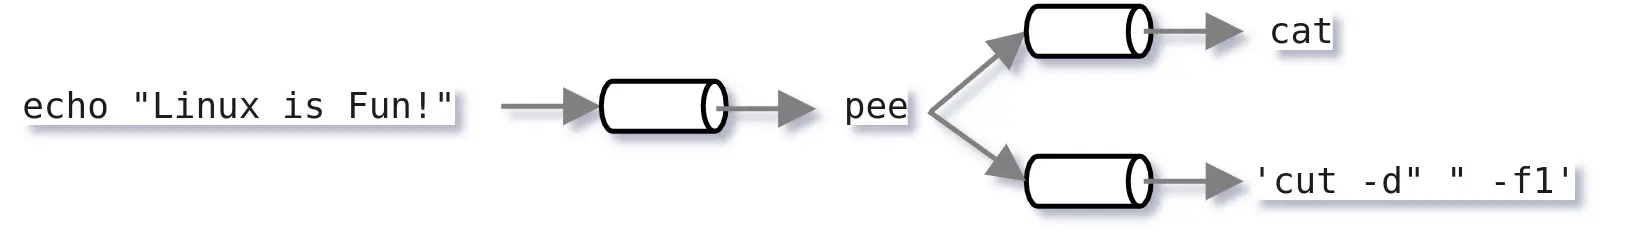 Linux pee command diagram